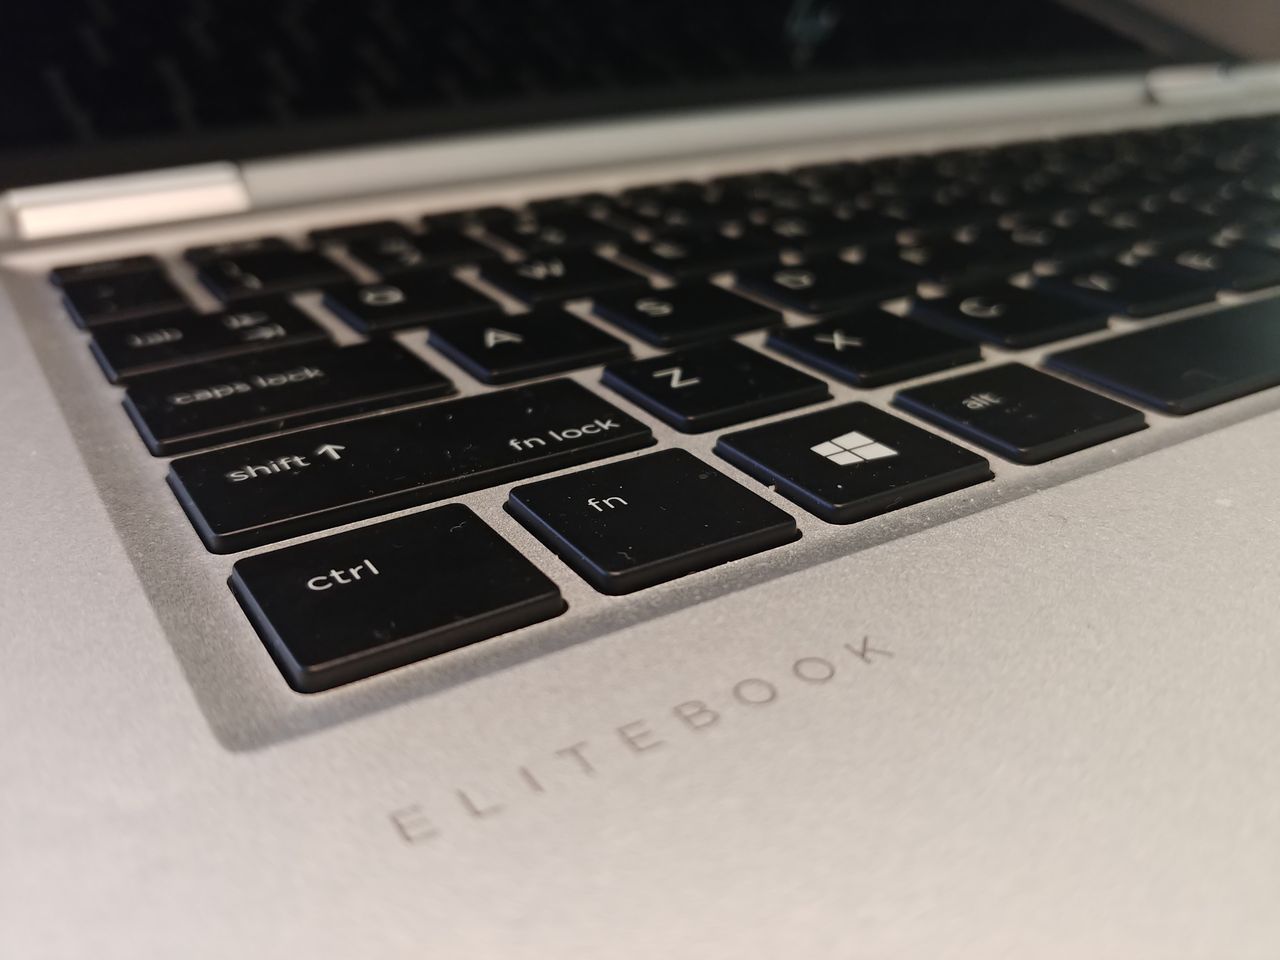 HP EliteBook X360 1030 G2, lo hemos probado